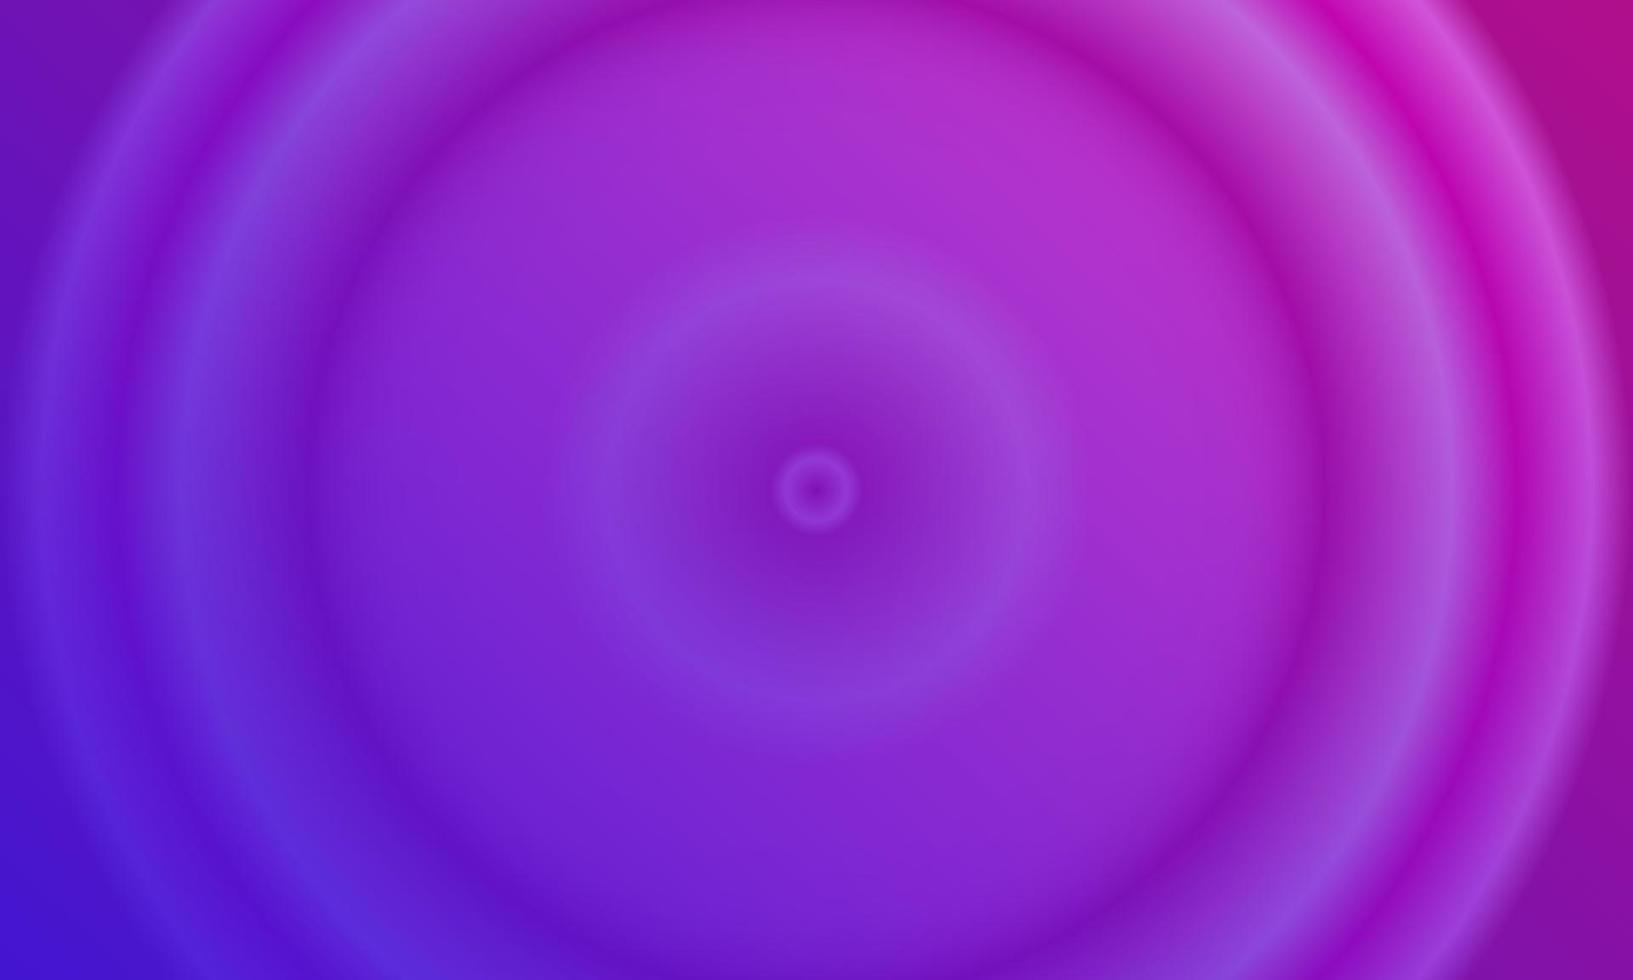 abstrakter hintergrund mit rosa, lila und dunkelblauem radialverlauf. einfacher, minimalistischer, moderner und farbenfroher Stil. Verwendung für Homepage, Hintergrund, Hintergrundbild, Titelbanner oder Flyer vektor